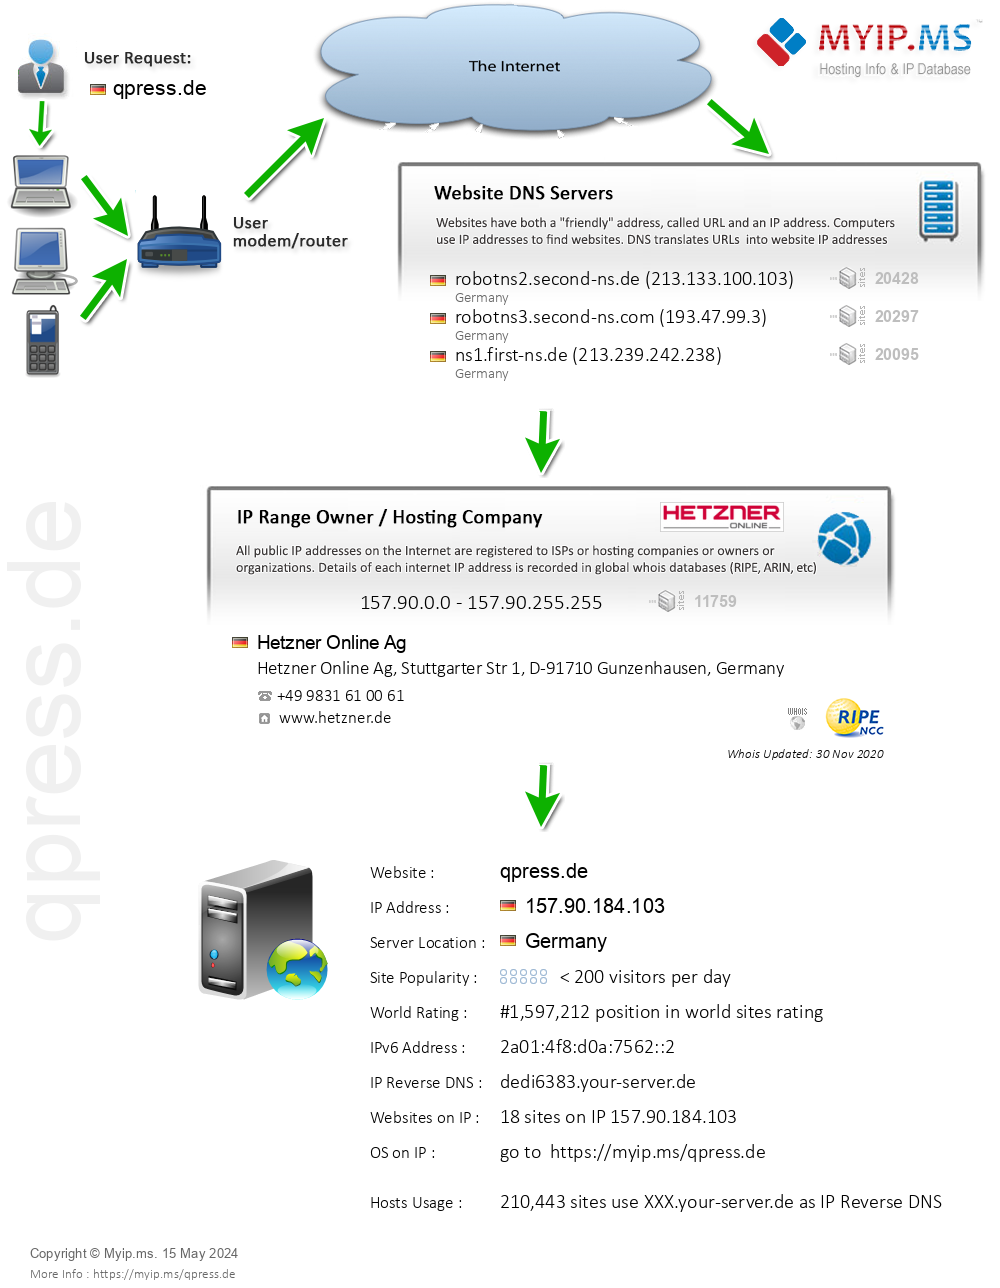 Qpress.de - Website Hosting Visual IP Diagram